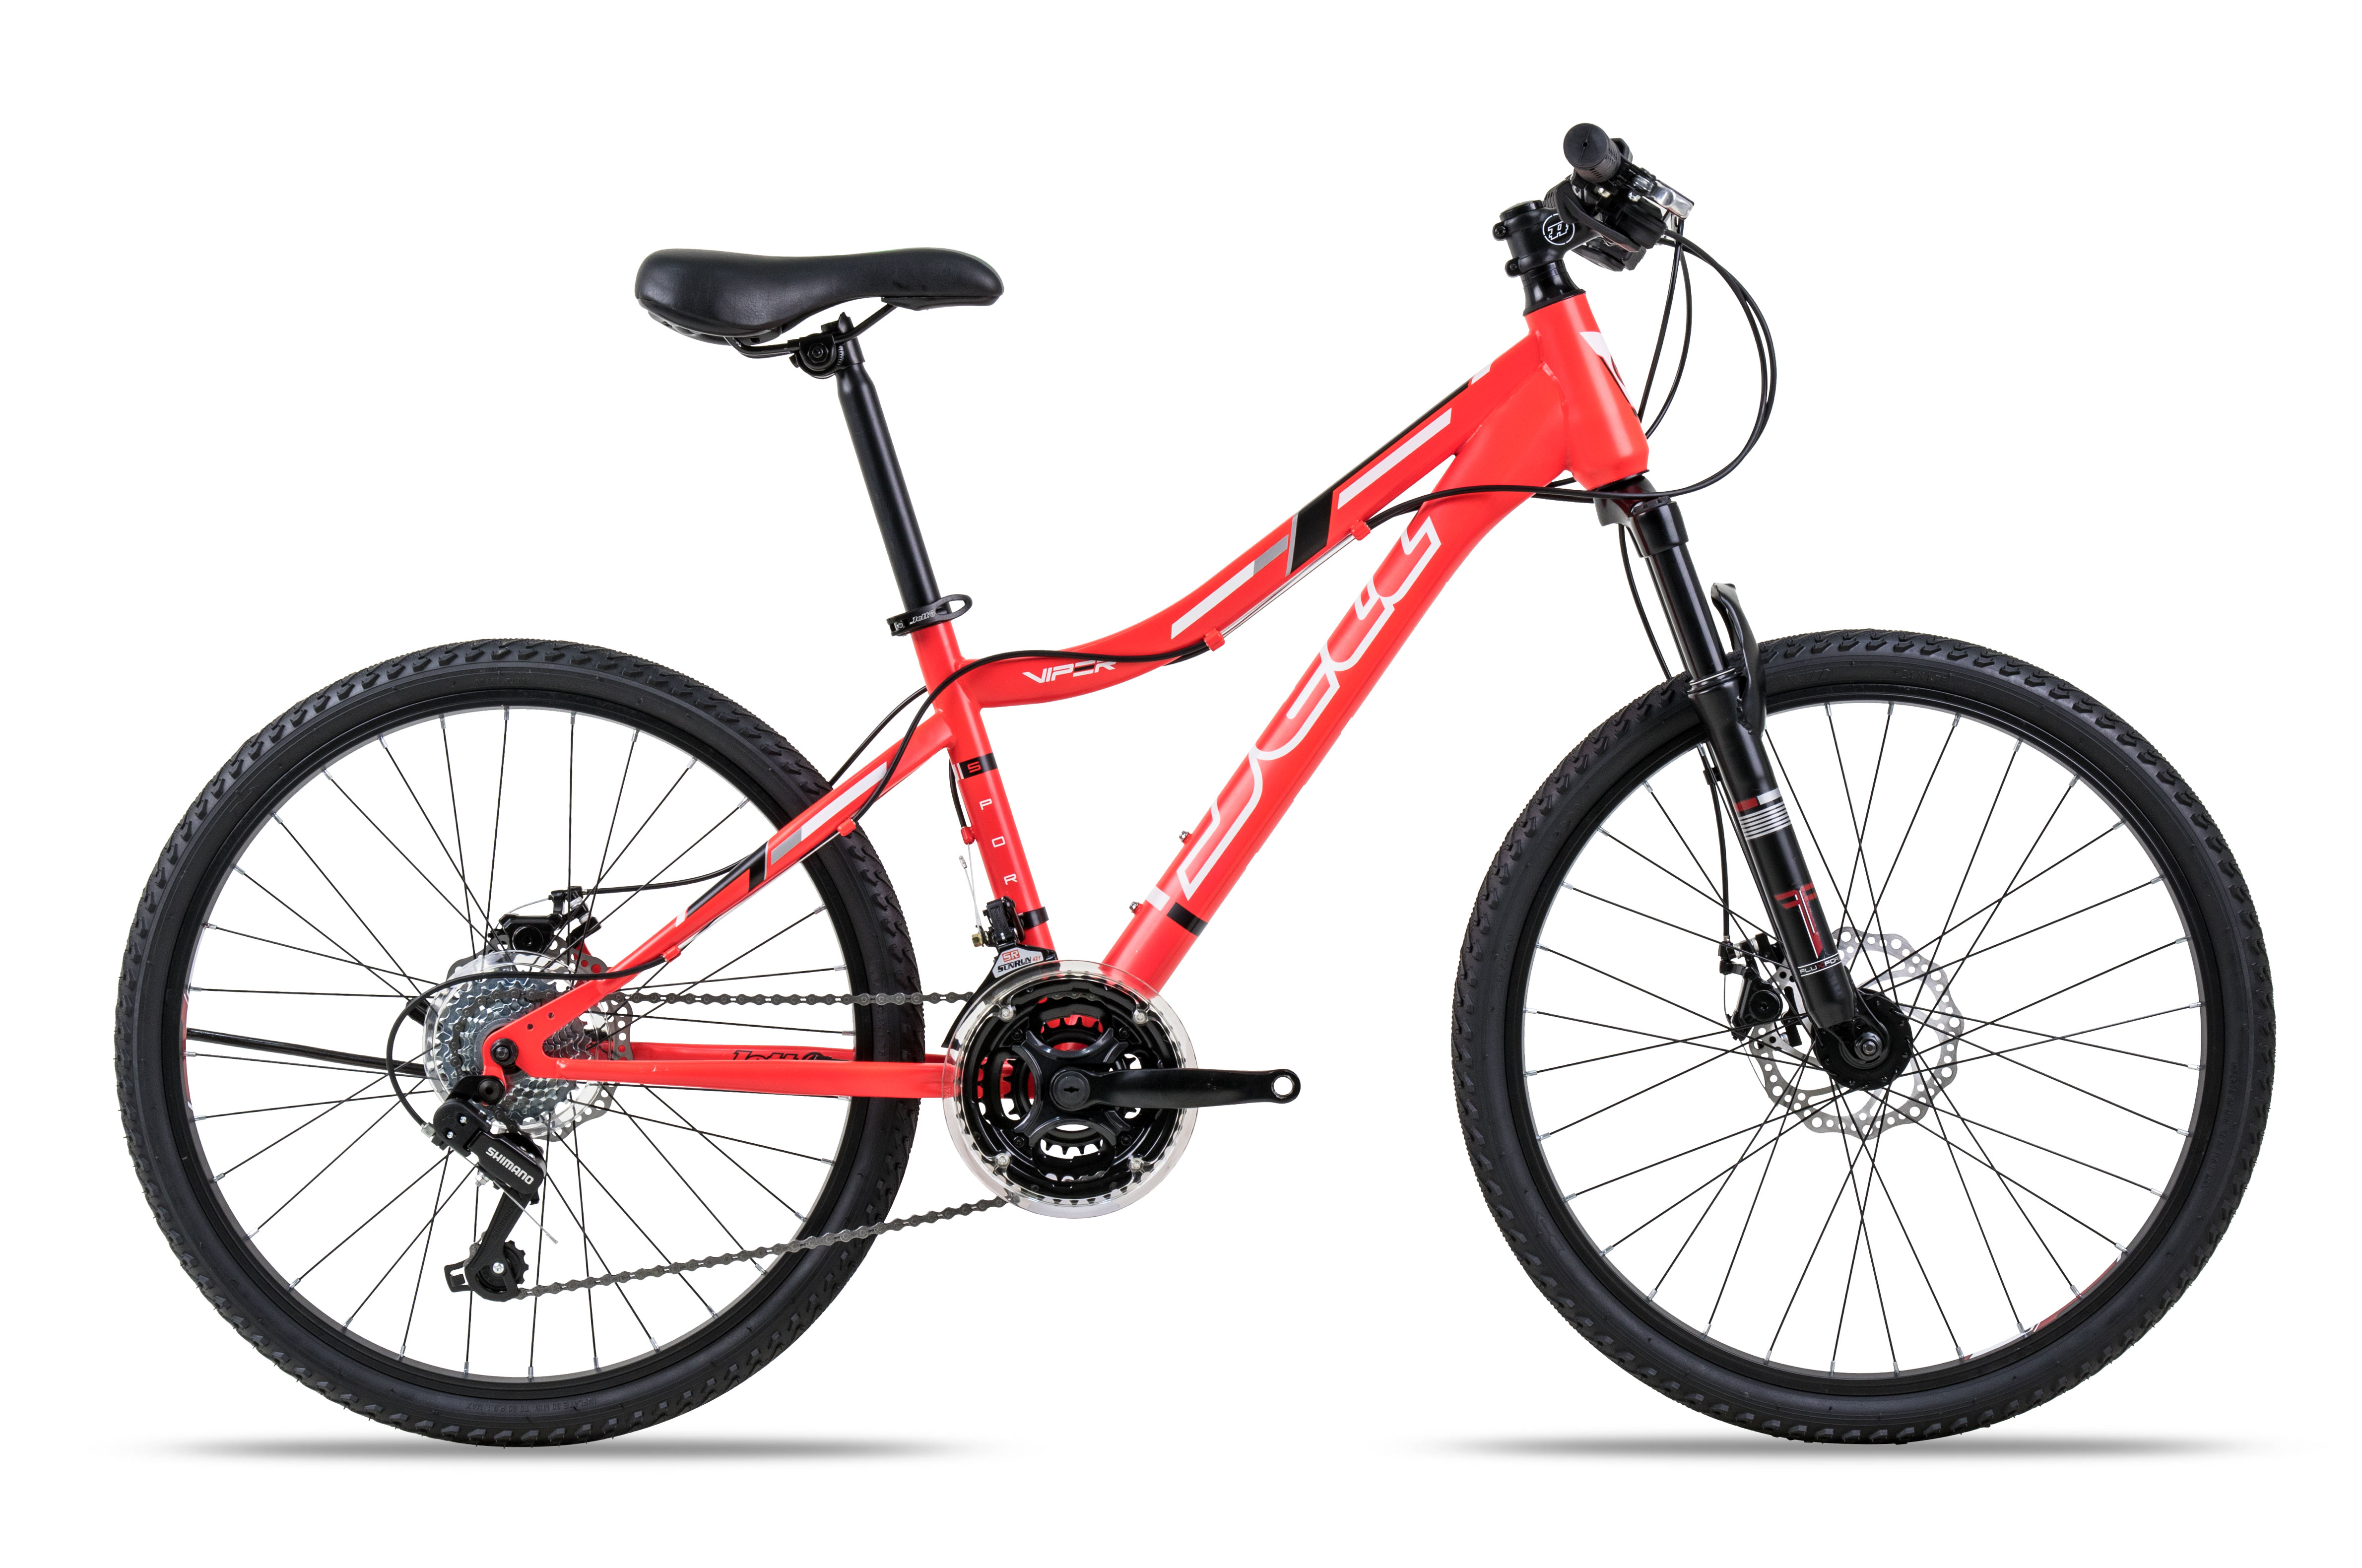 Toan Thang Cycles - Shopxedap - Xe đạp địa hình Jett Viper Sport Red 2016